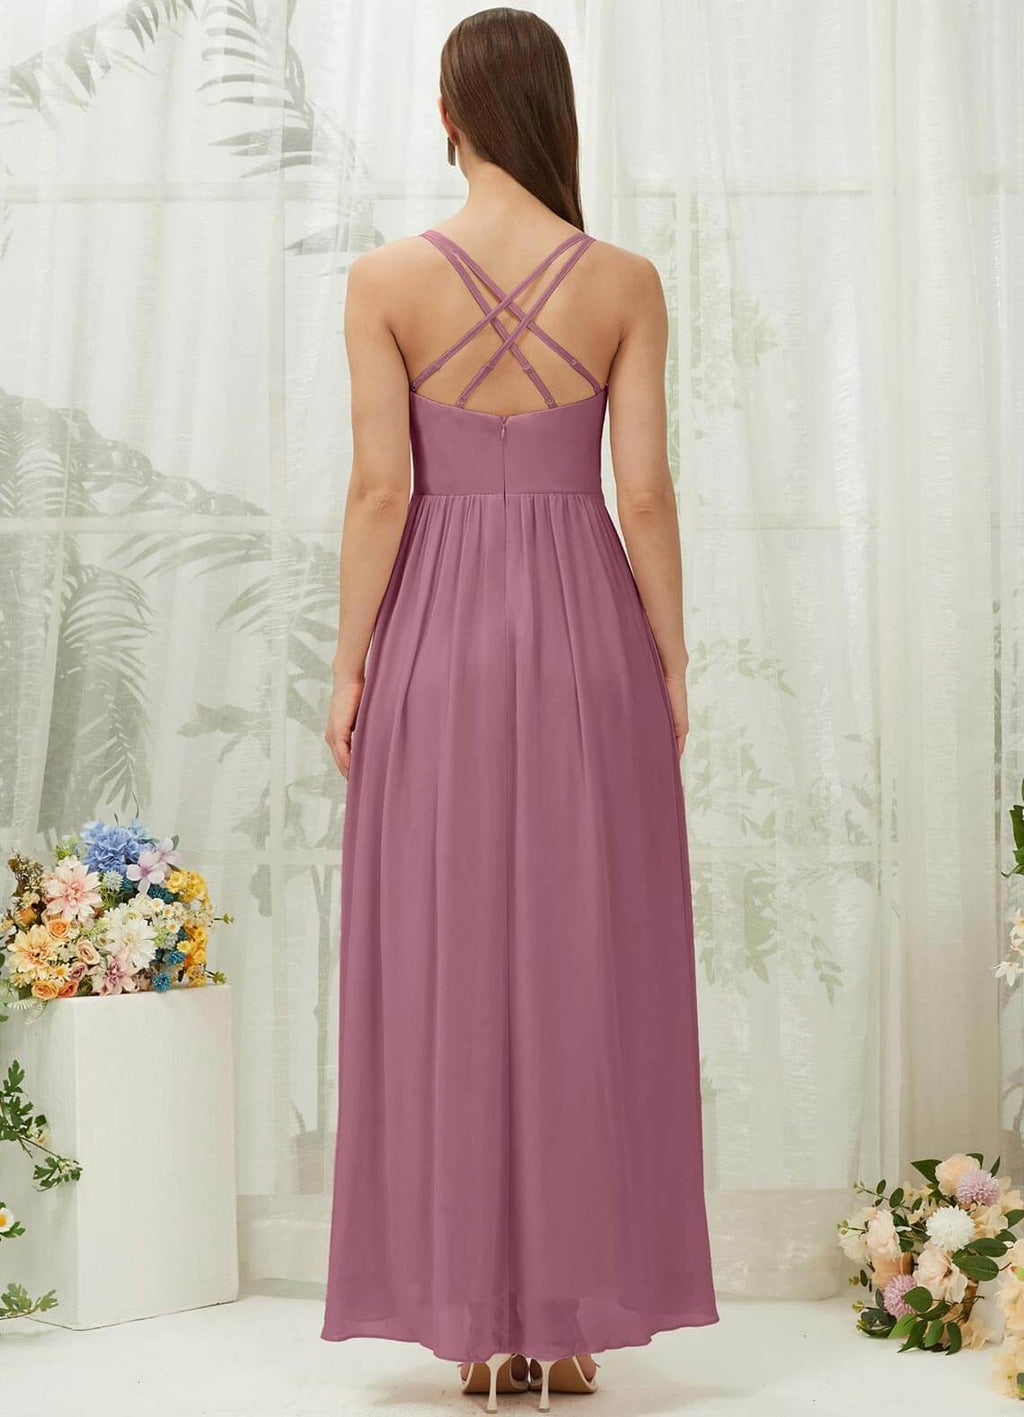 NZ Bridal Dusty Rose Chiffon Sweetheart bridesmaid dresses 01691es Esme a